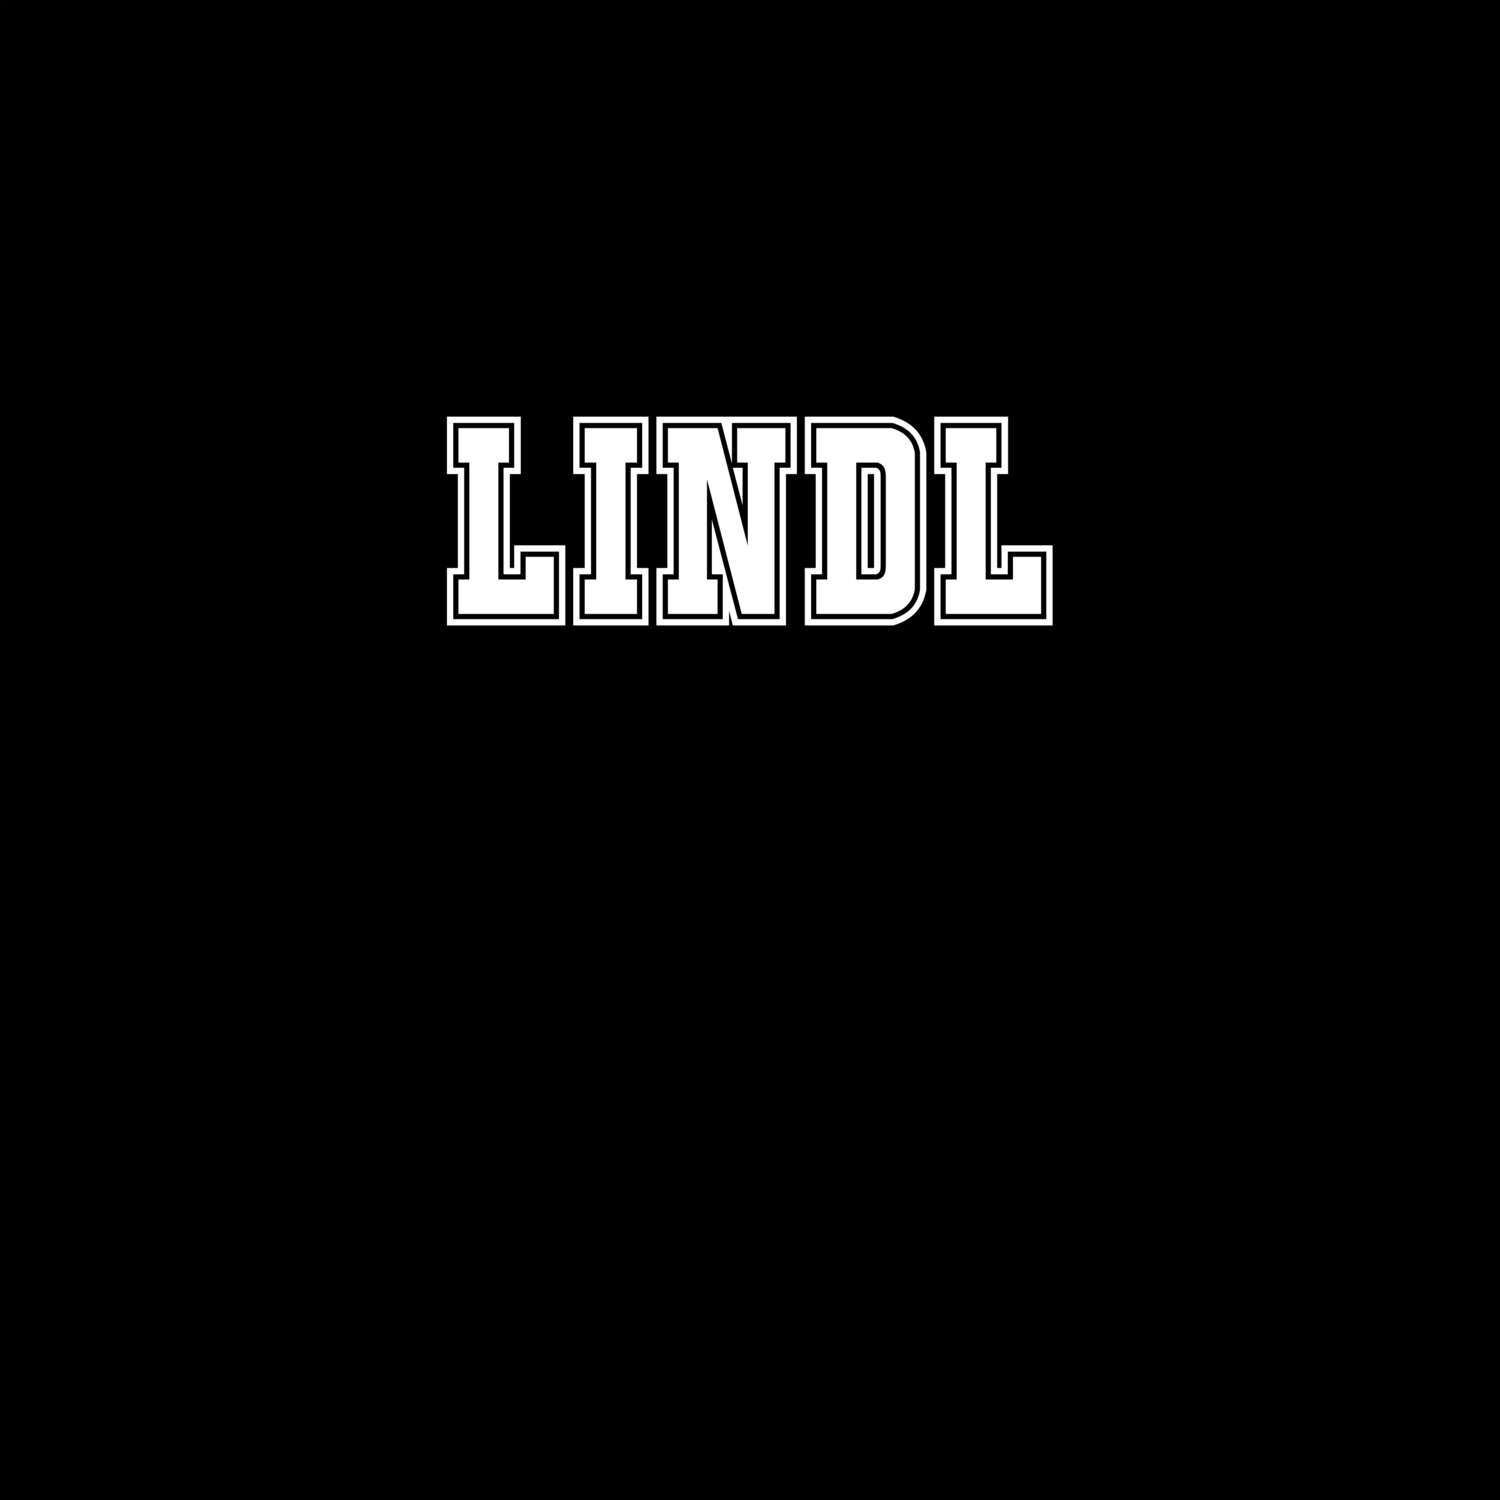 Lindl T-Shirt »Classic«